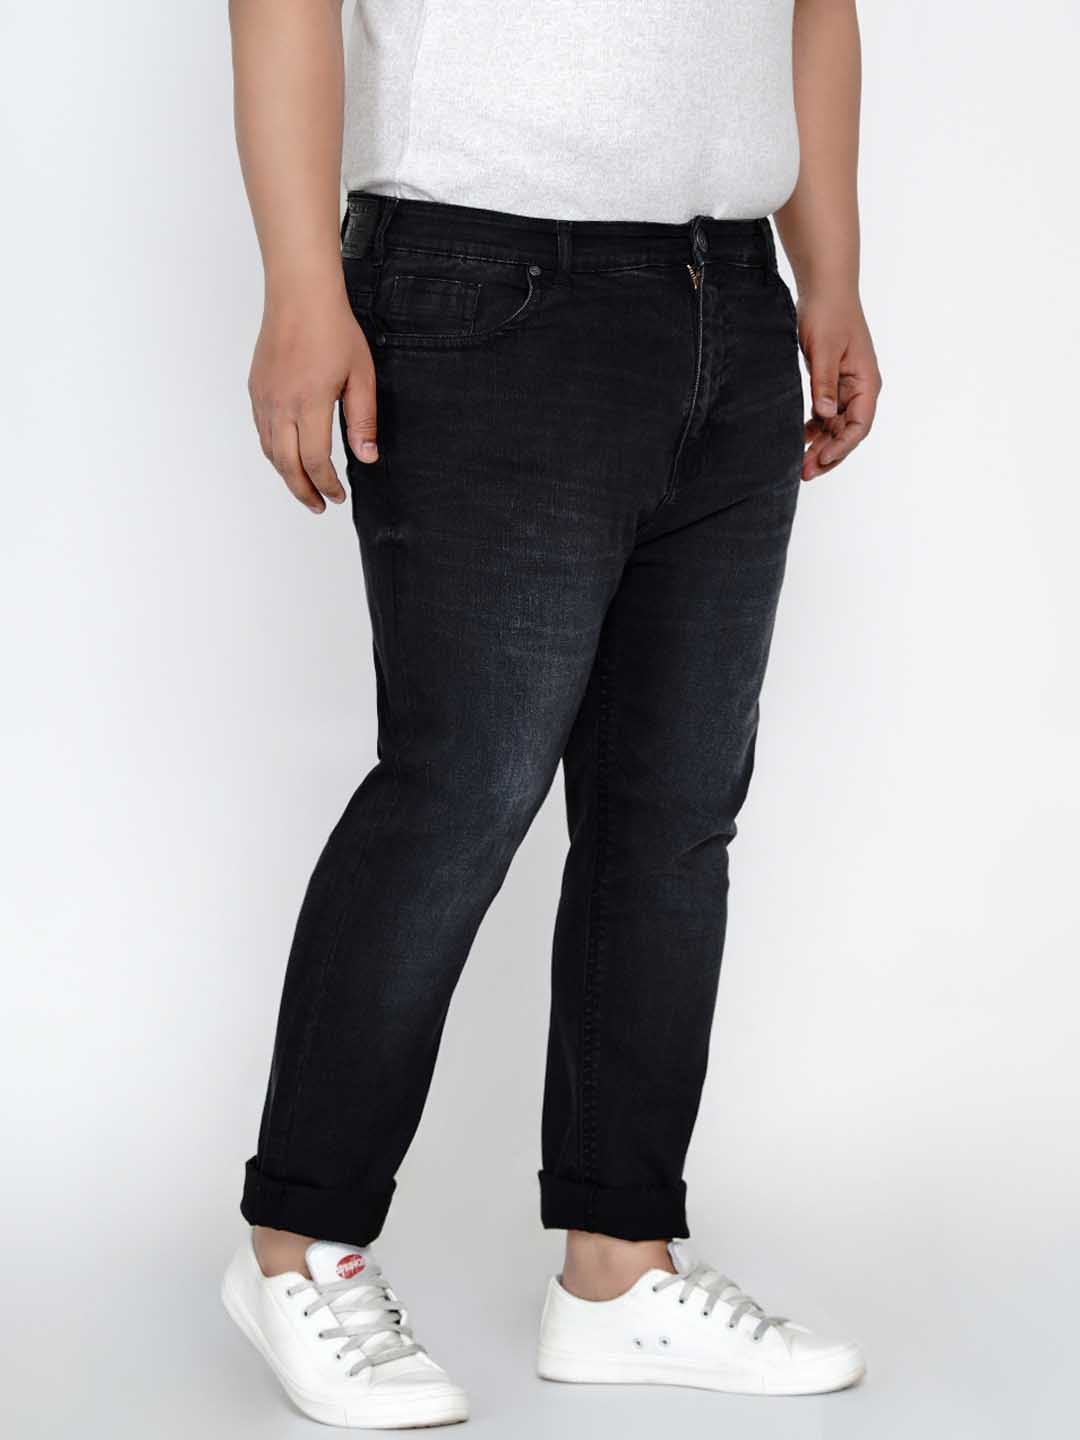 bottomwear/jeans/JPJ12136/jpj12136-2.jpg